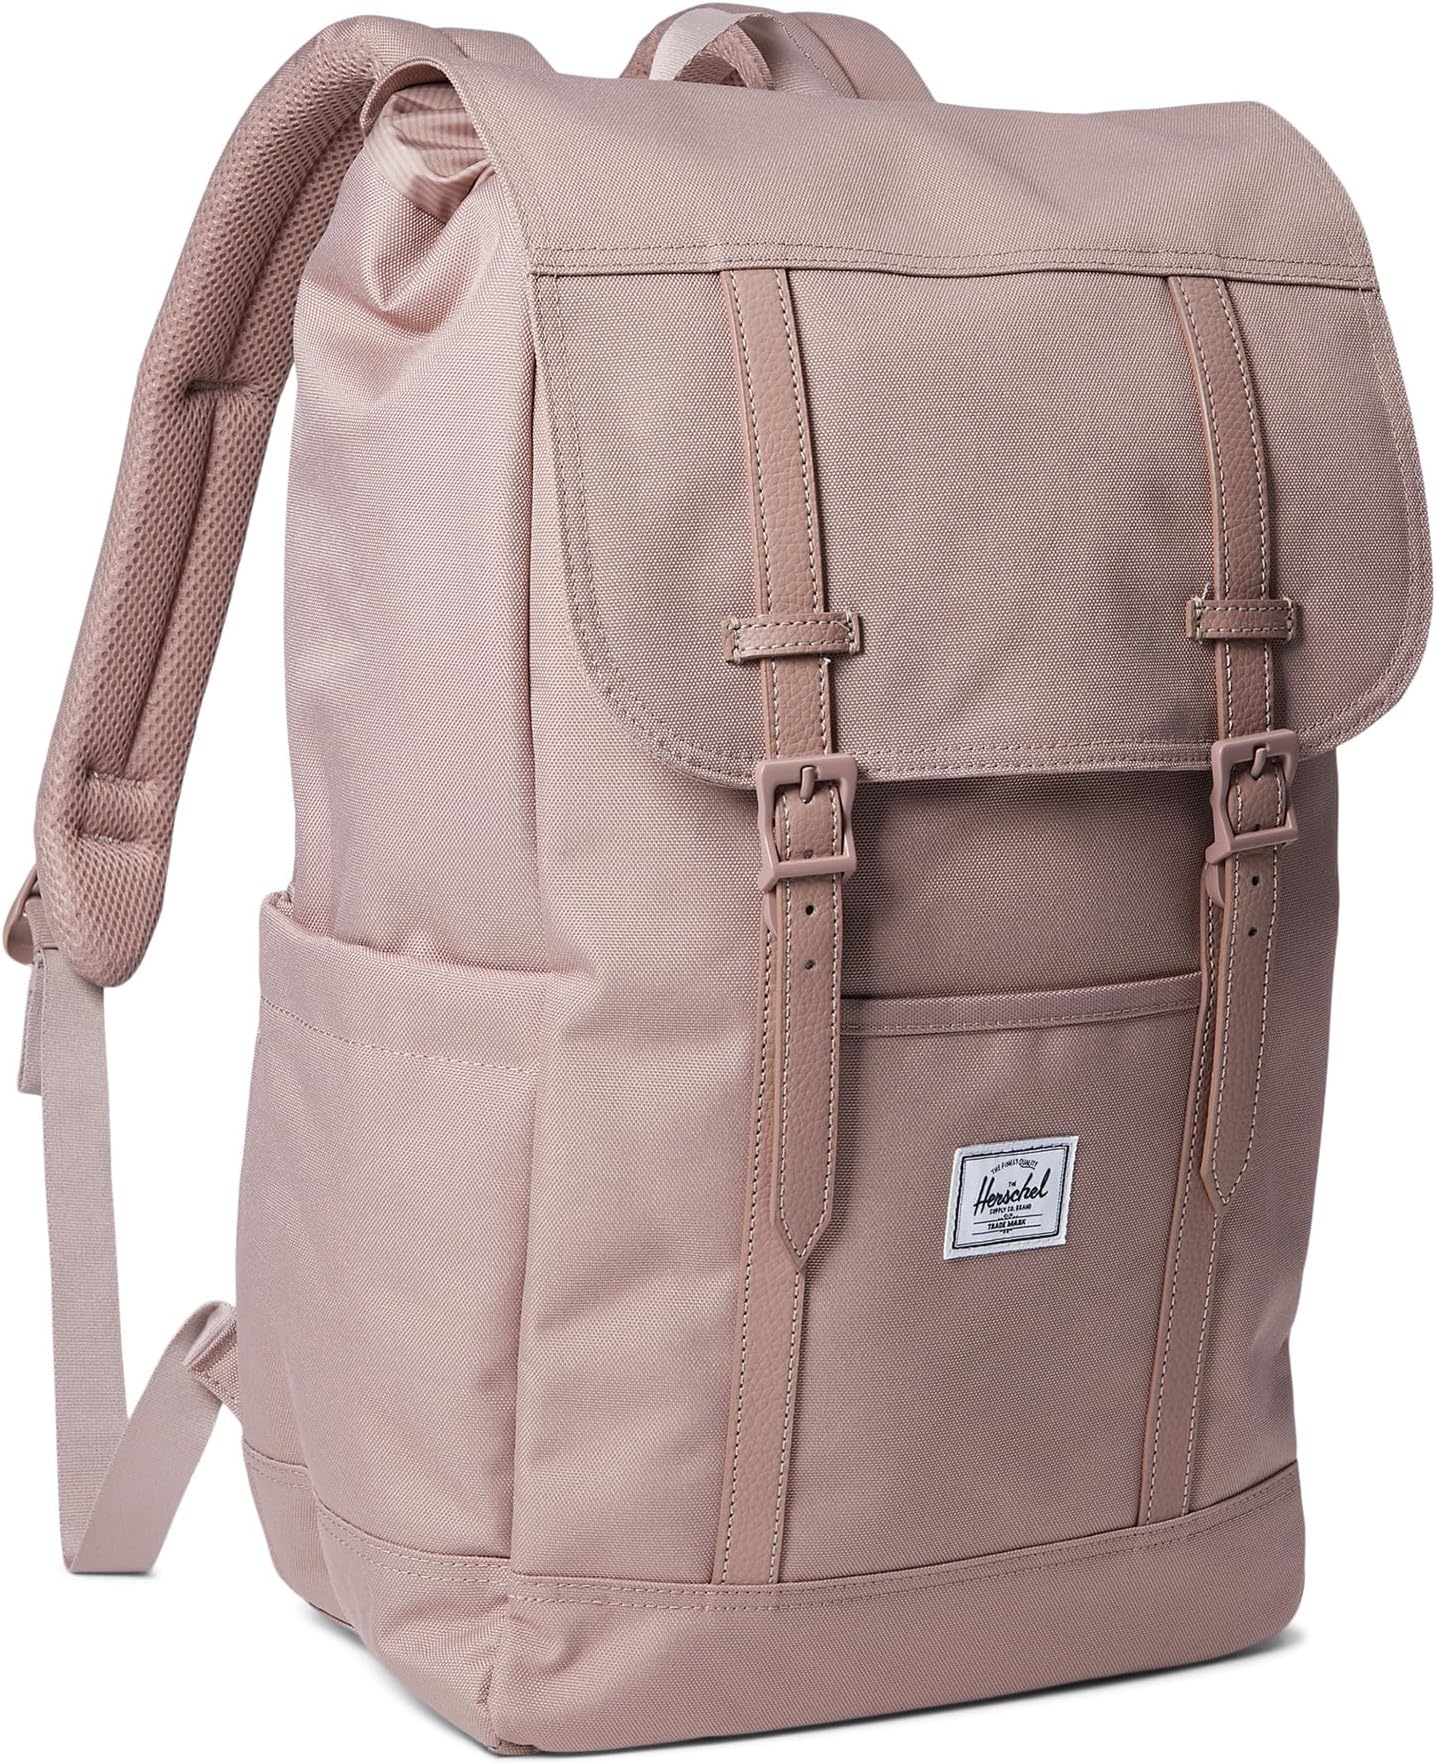 Рюкзак Retreat Backpack Herschel Supply Co., цвет Ash Rose